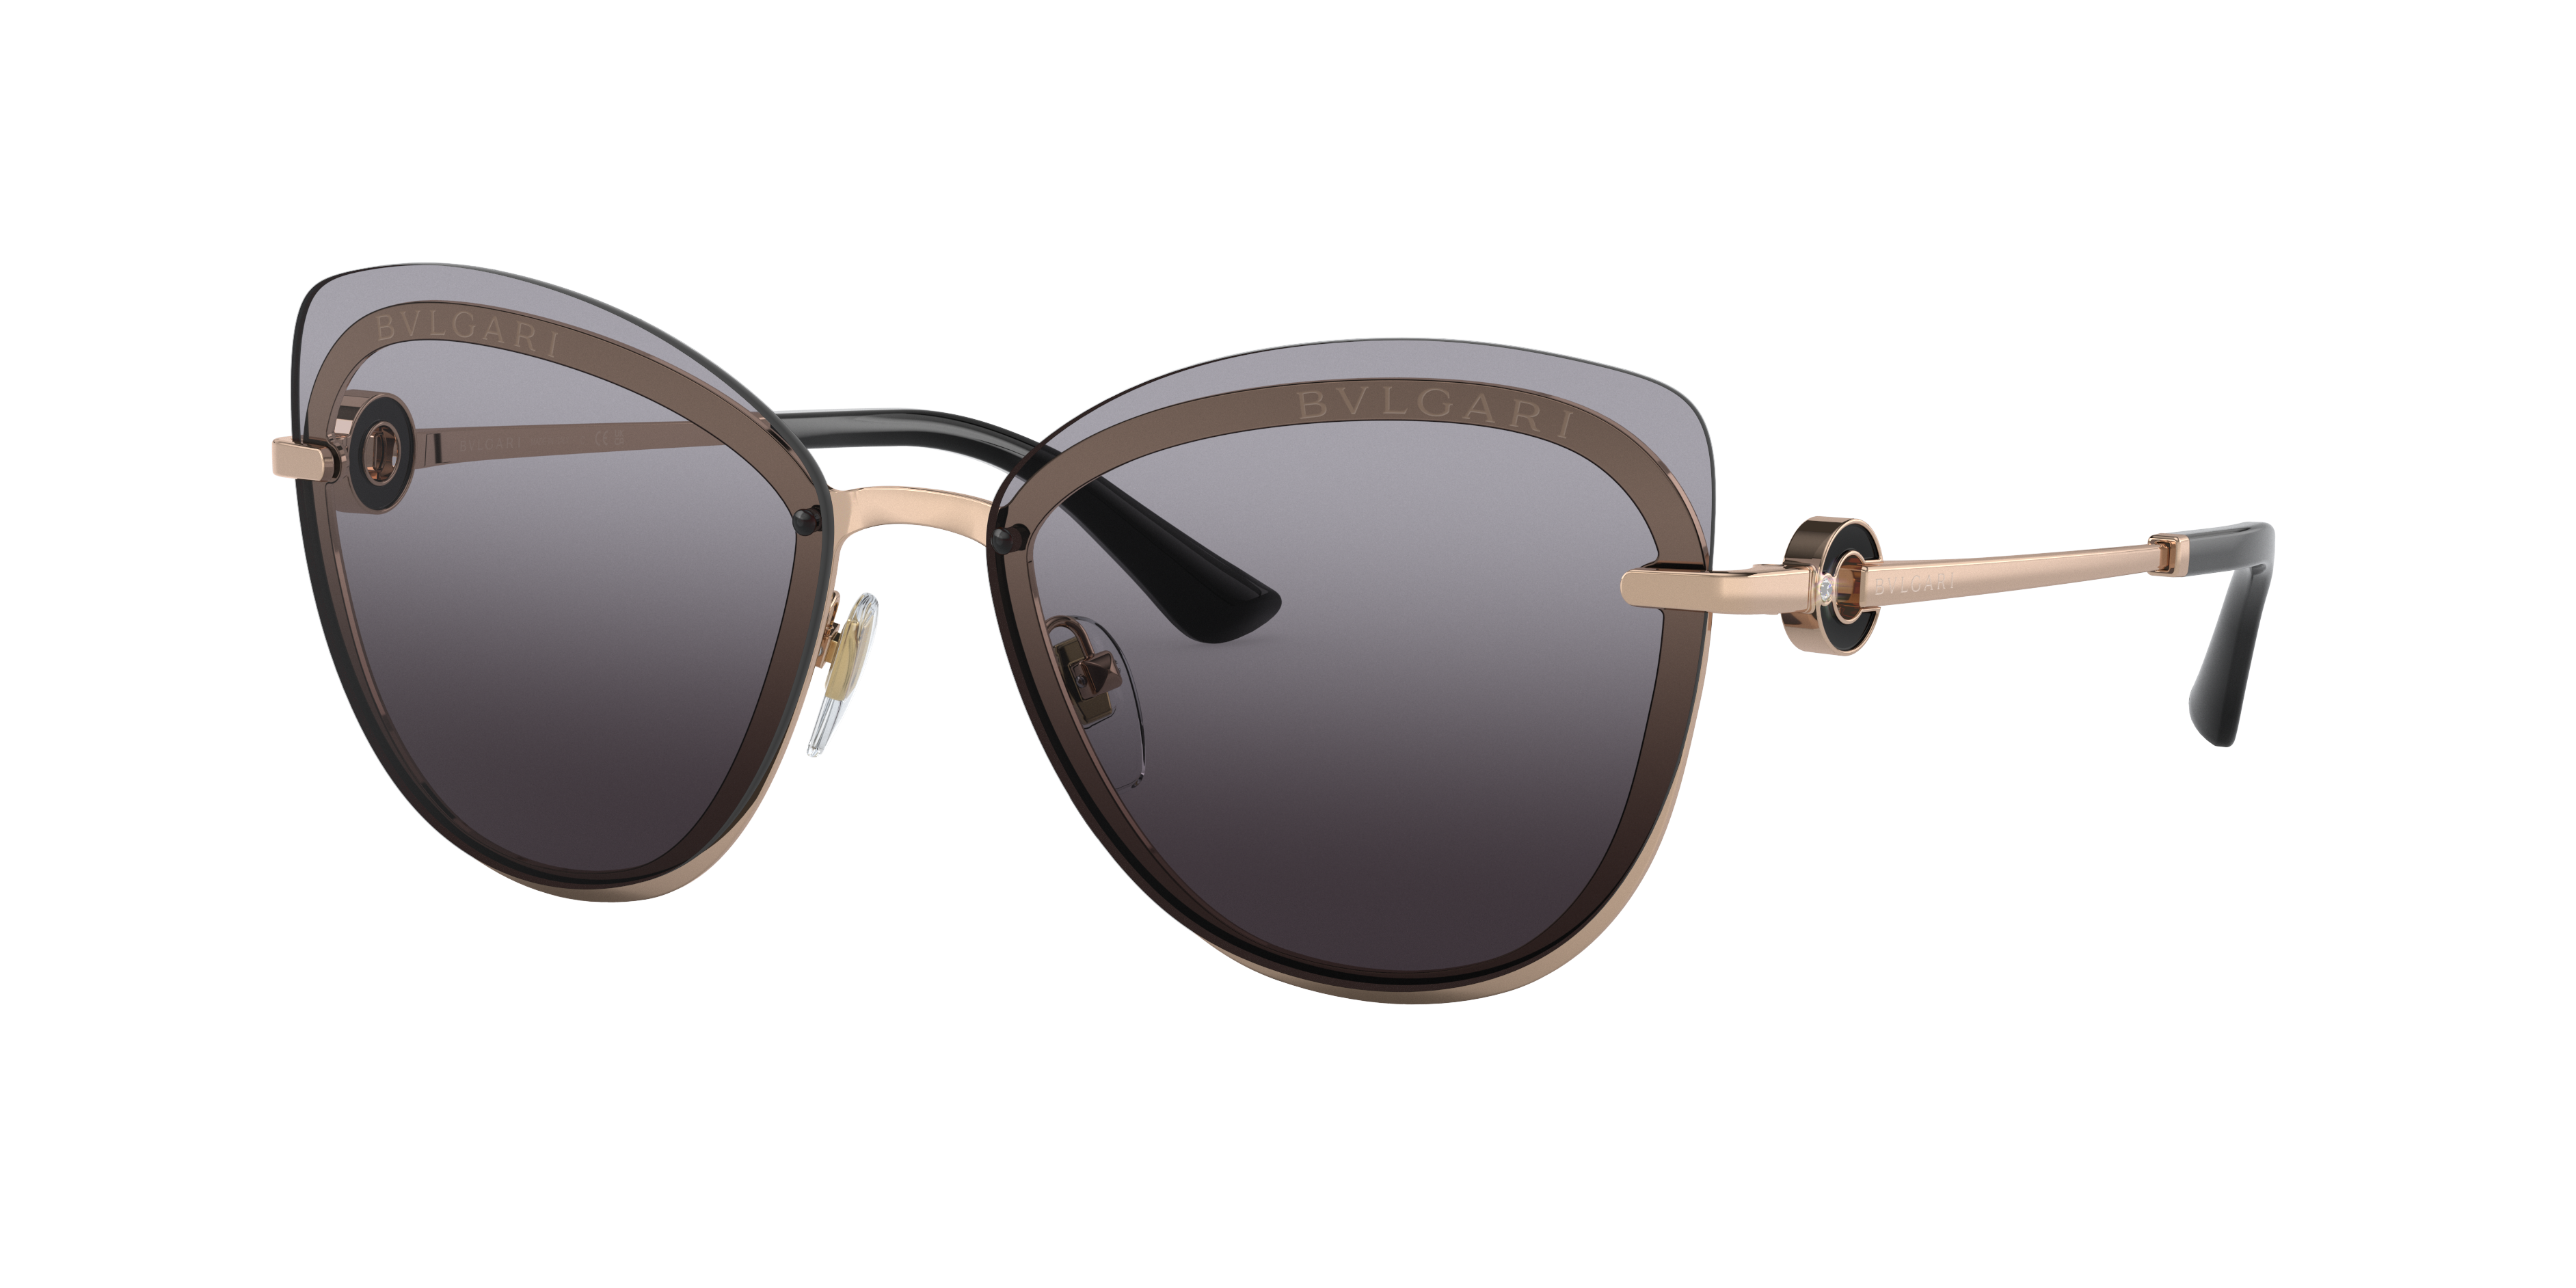 Consulte nosso catálogo de Óculos de Sol Bulgari Eyewear com diversos modelos e preços para sua escolha.